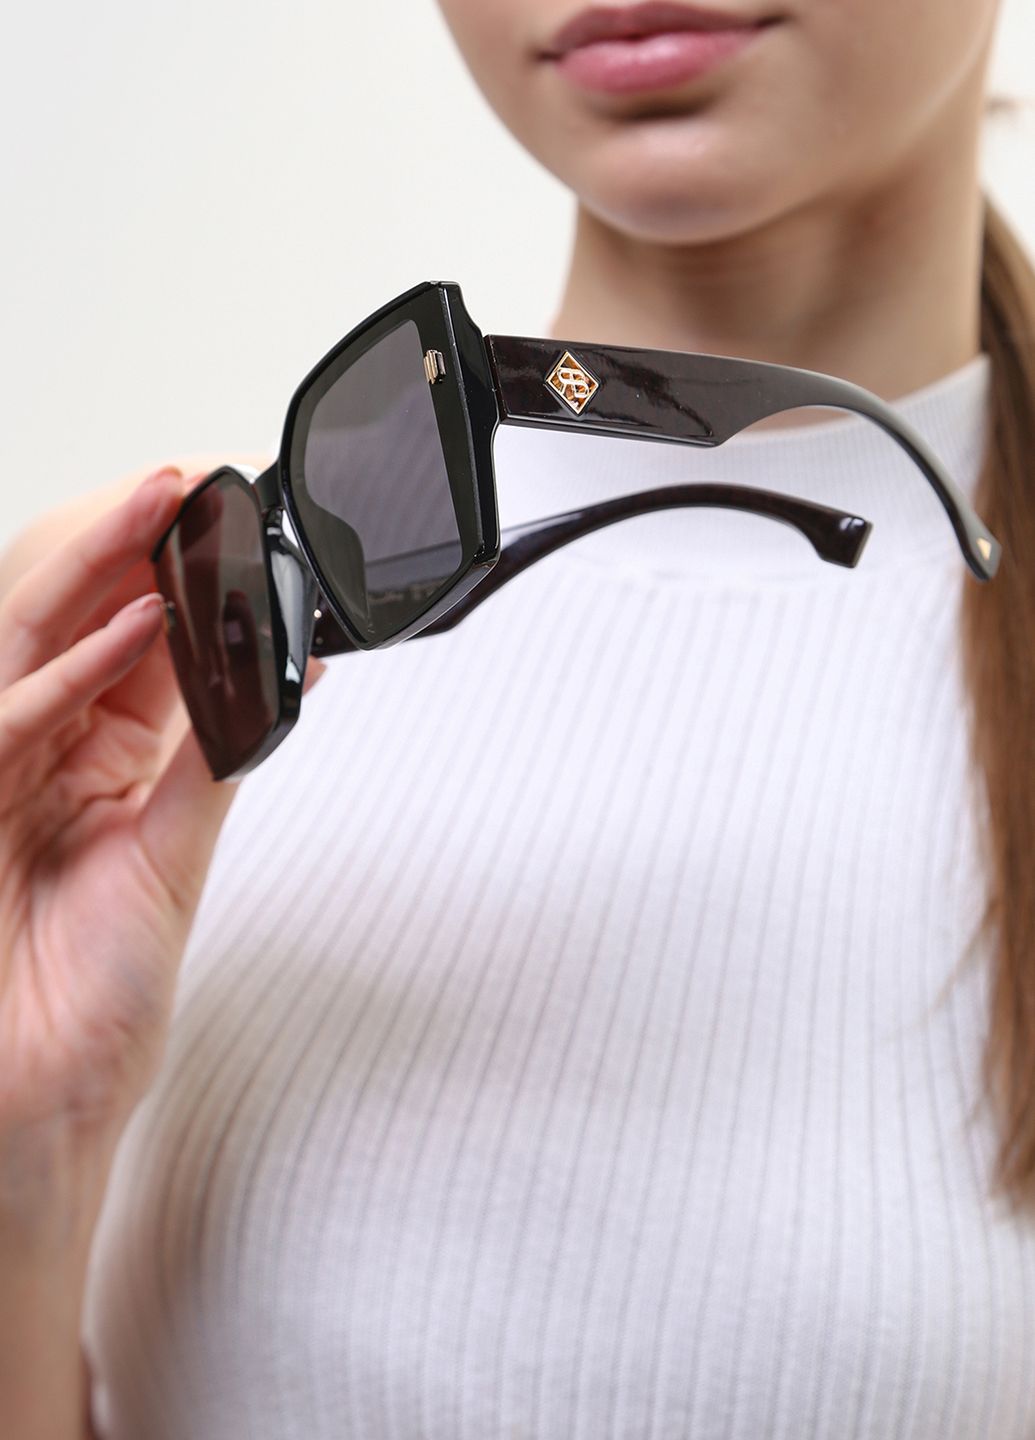 Купить Женские солнцезащитные очки Rita Bradley с поляризацией RB728 112062 в интернет-магазине